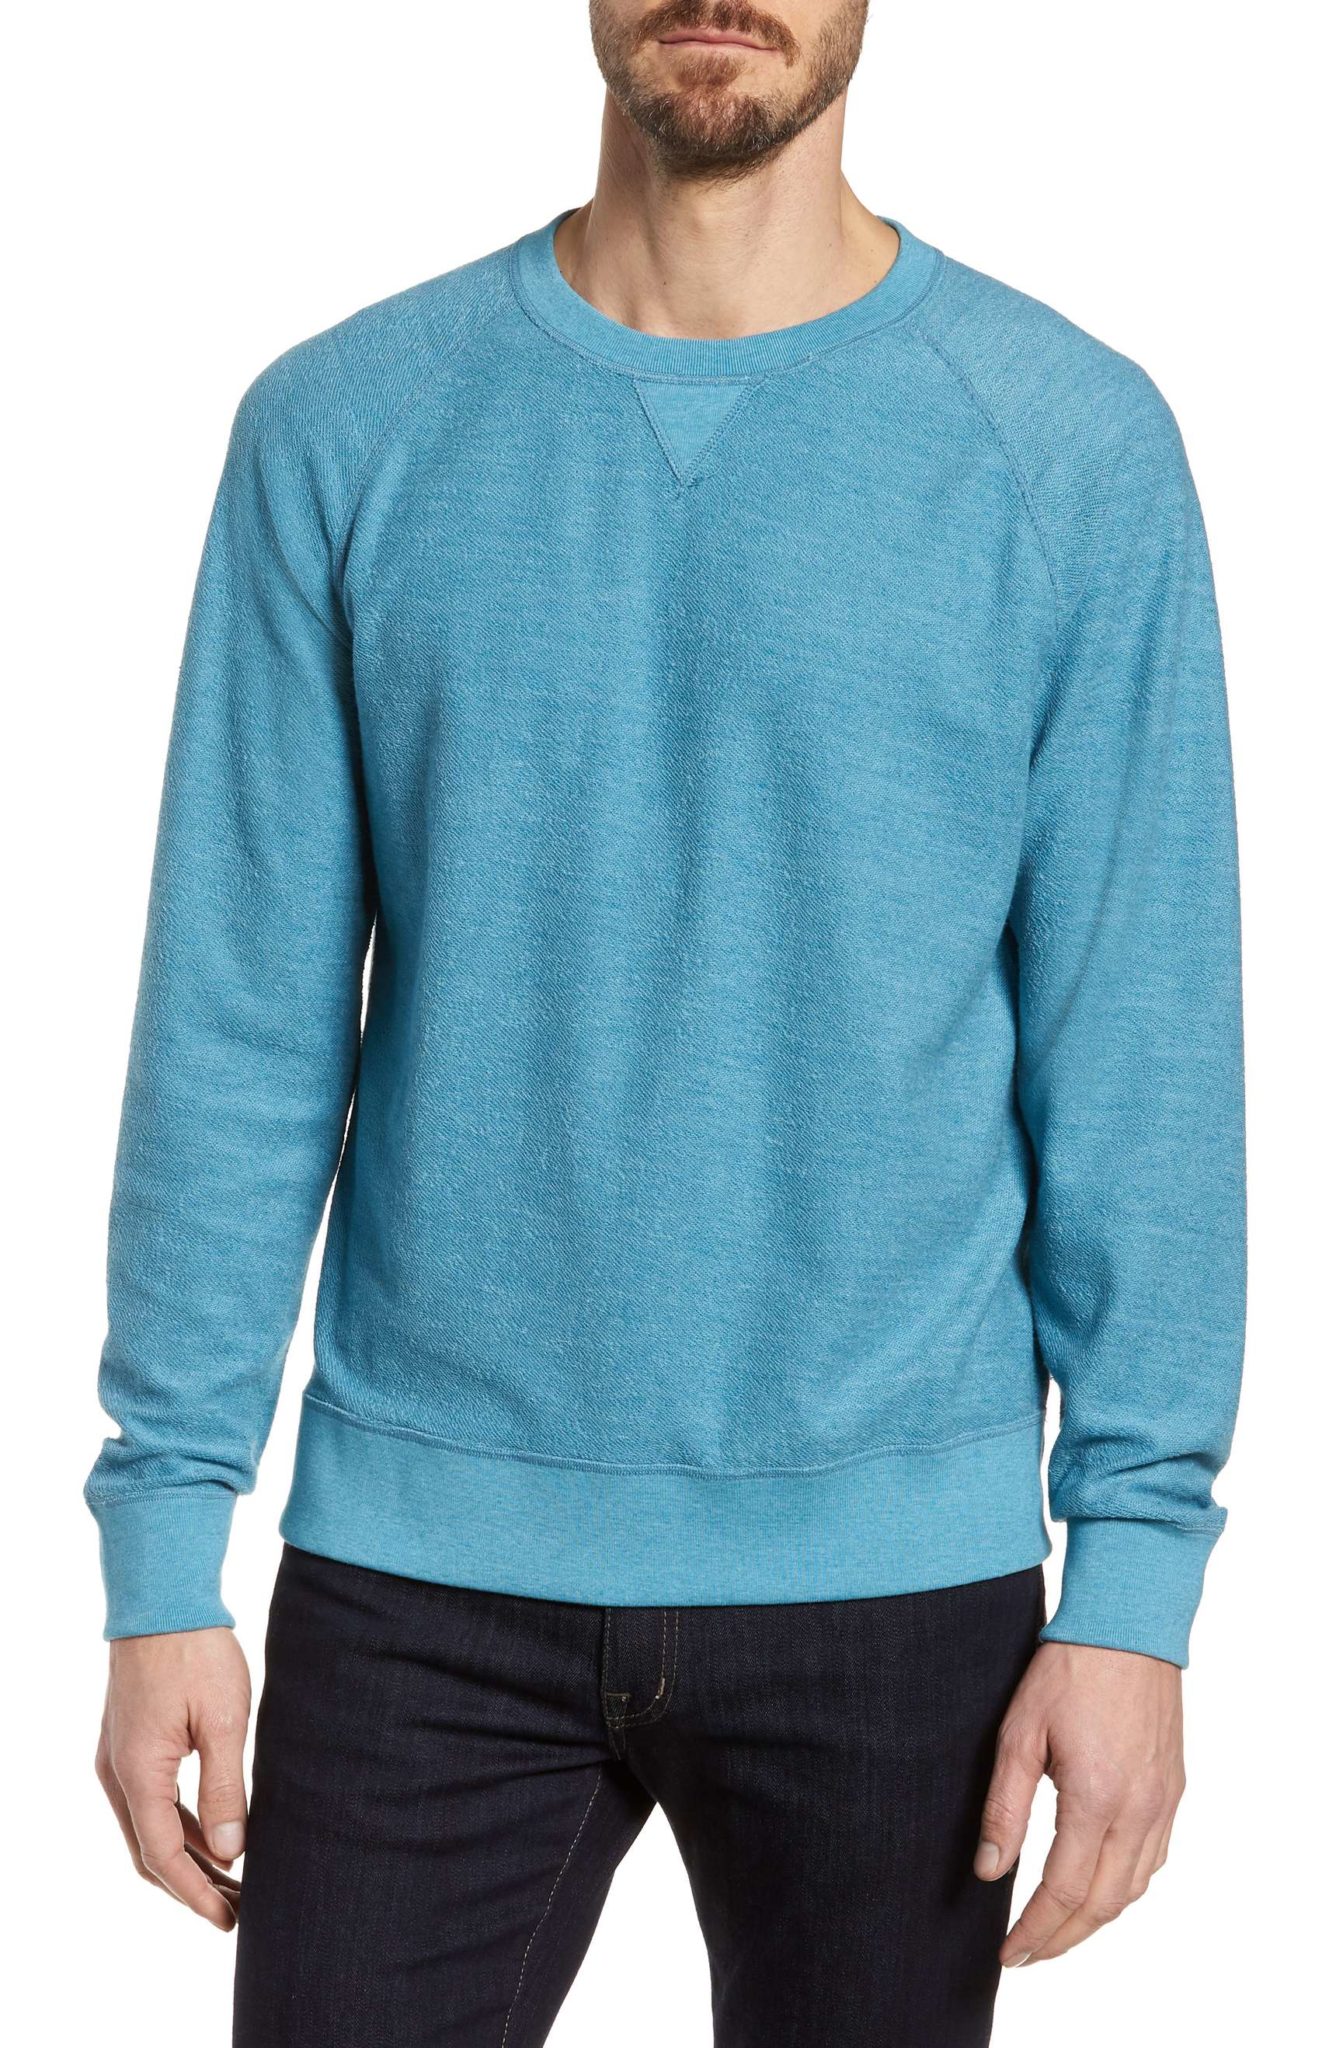 Best Sweatshirts for Men 2018: Blue Crewneck Sweatshirt 2022